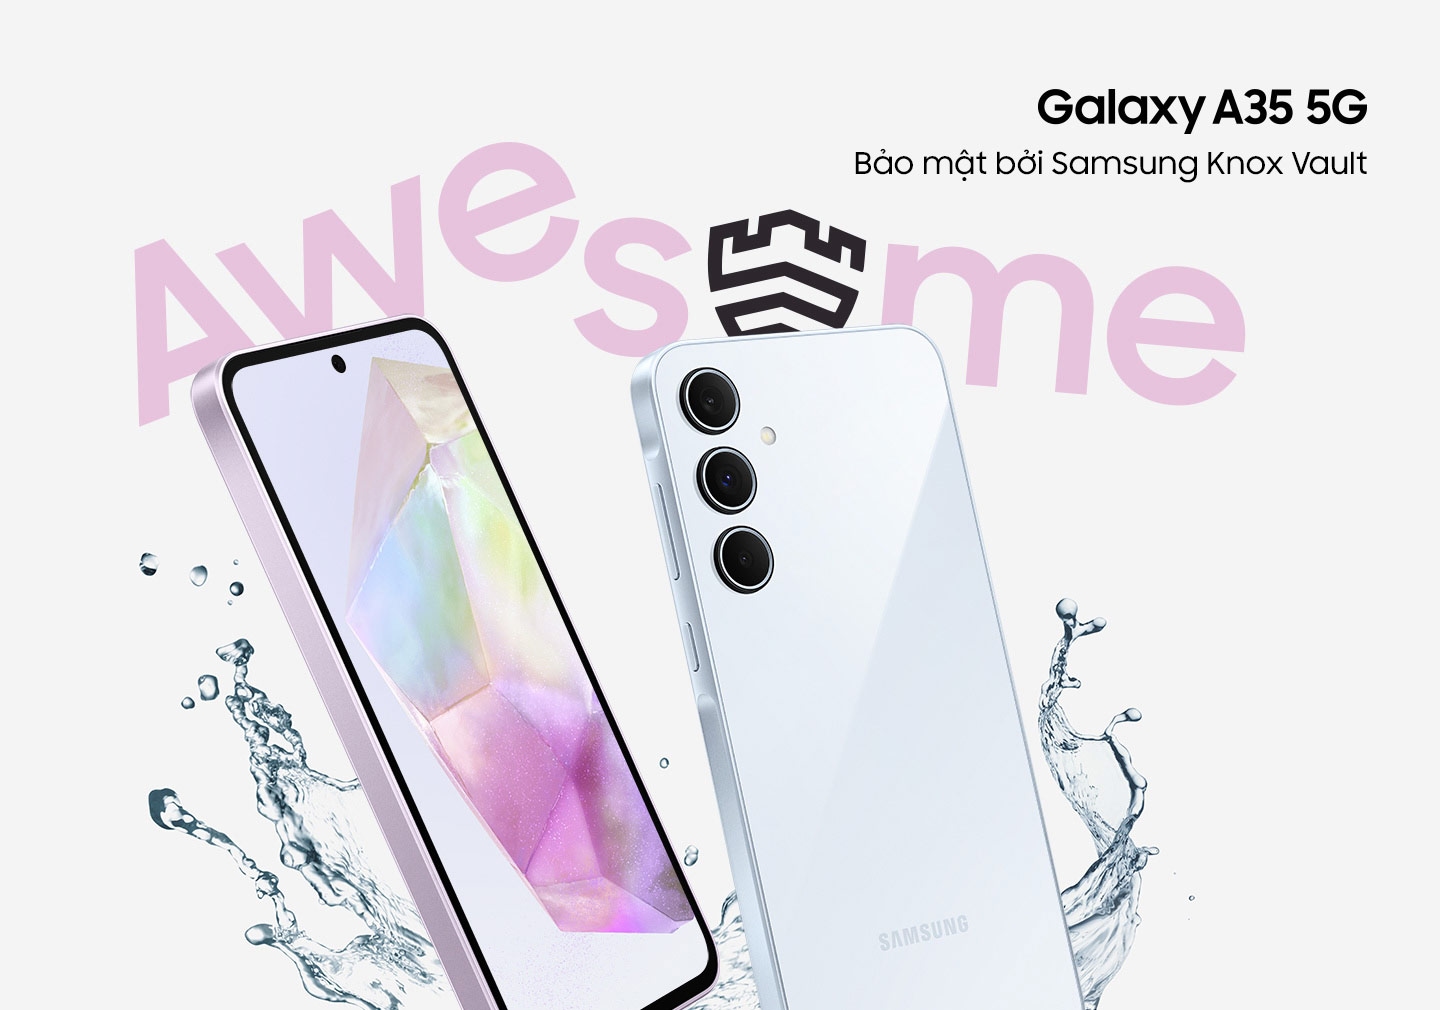 Hai chiếc điện thoại thông minh được chụp nghiêng với nước bắn tung tóe xung quanh cùng dòng chữ 'TUYỆT VỜI'. Màn hình của điện thoại hiển thị hình nền gradient và mặt sau có bố cục ba camera. Logo Galaxy A35 5G. Dòng chữ được bảo mật bởi Samsung Knox Vault.